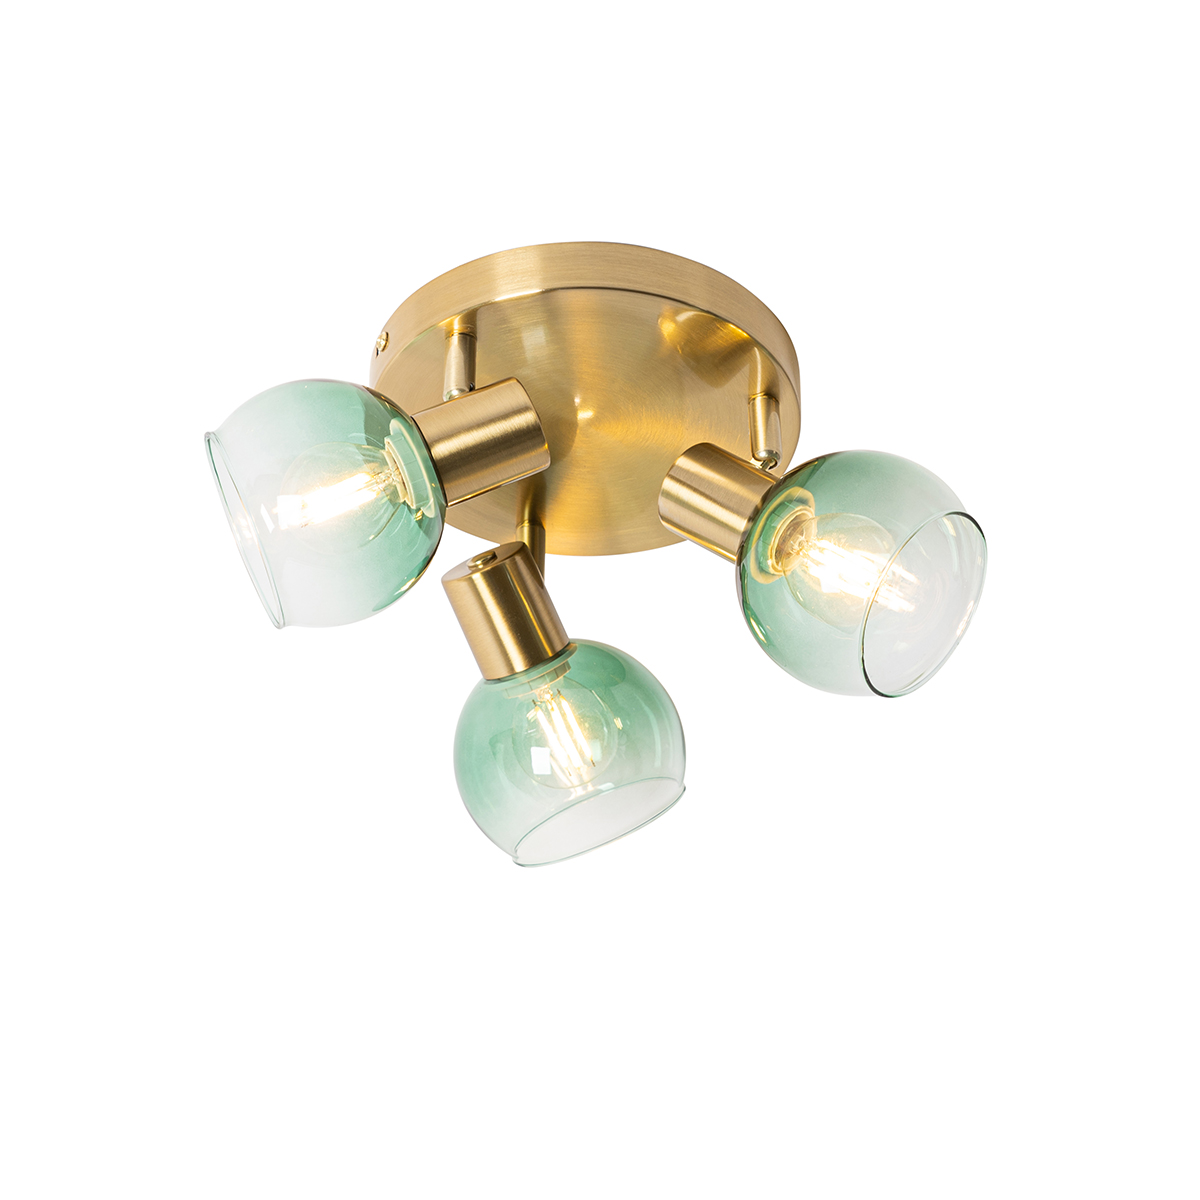 Art Deco mennyezeti lámpa arany, zöld üveggel 3 fényű - Vidro